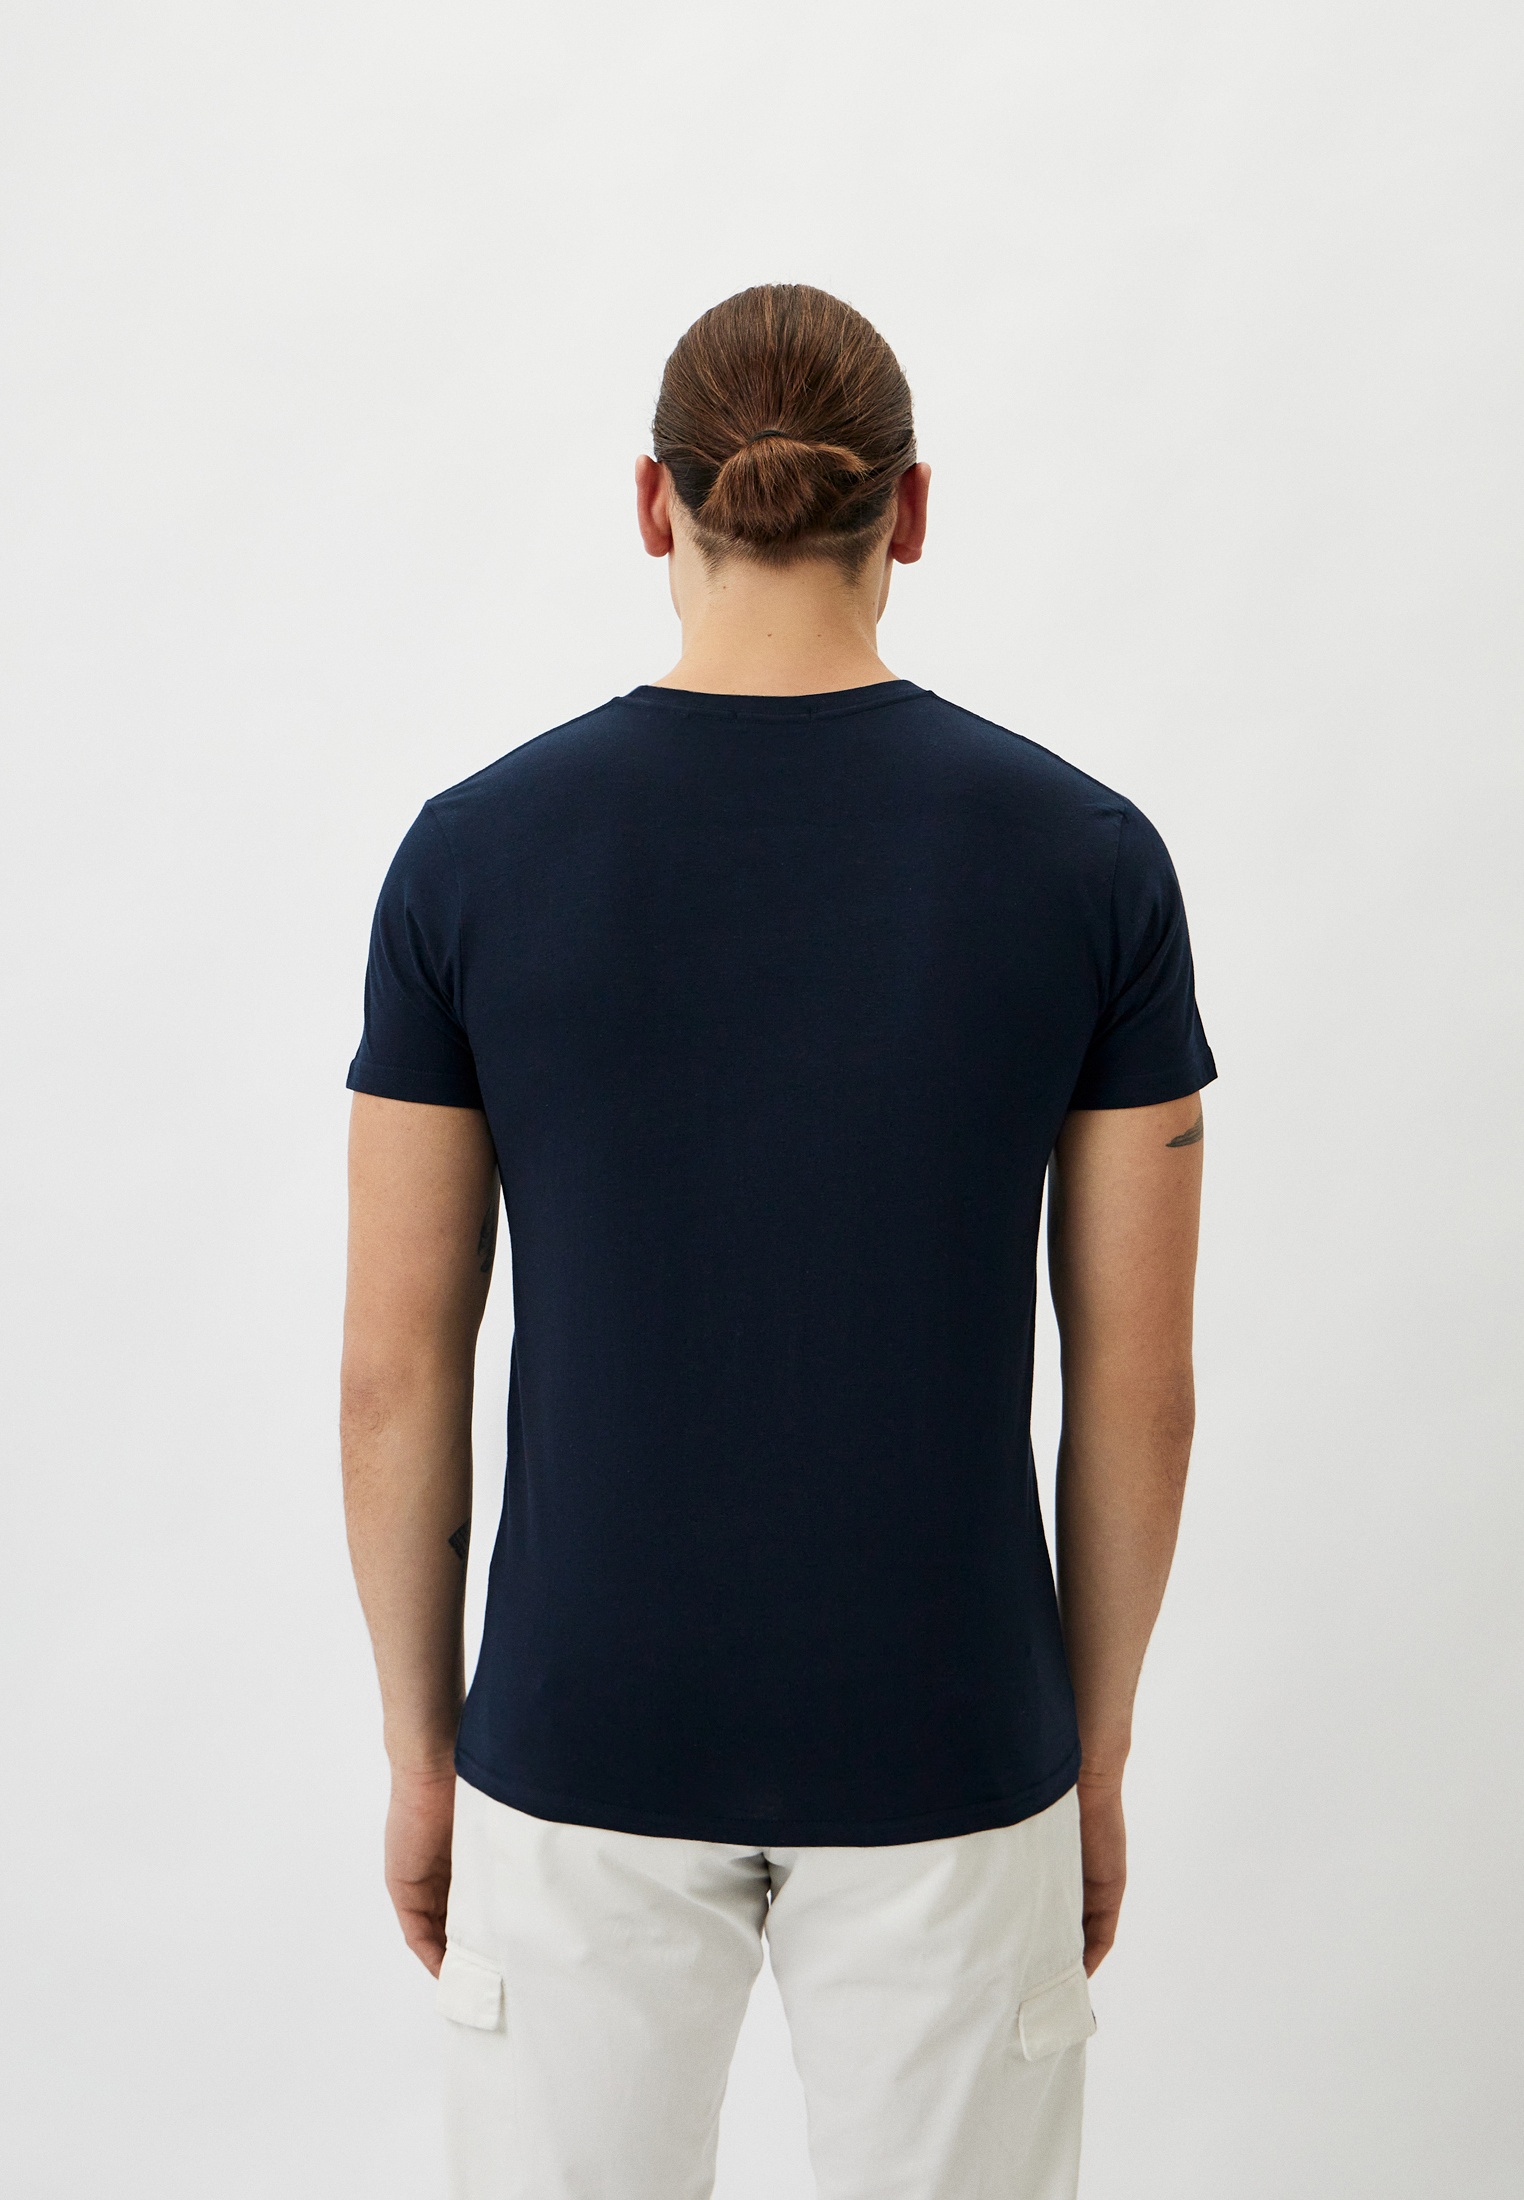 Мужская футболка Baldinini (Балдинини) B-OLM-M004: изображение 3